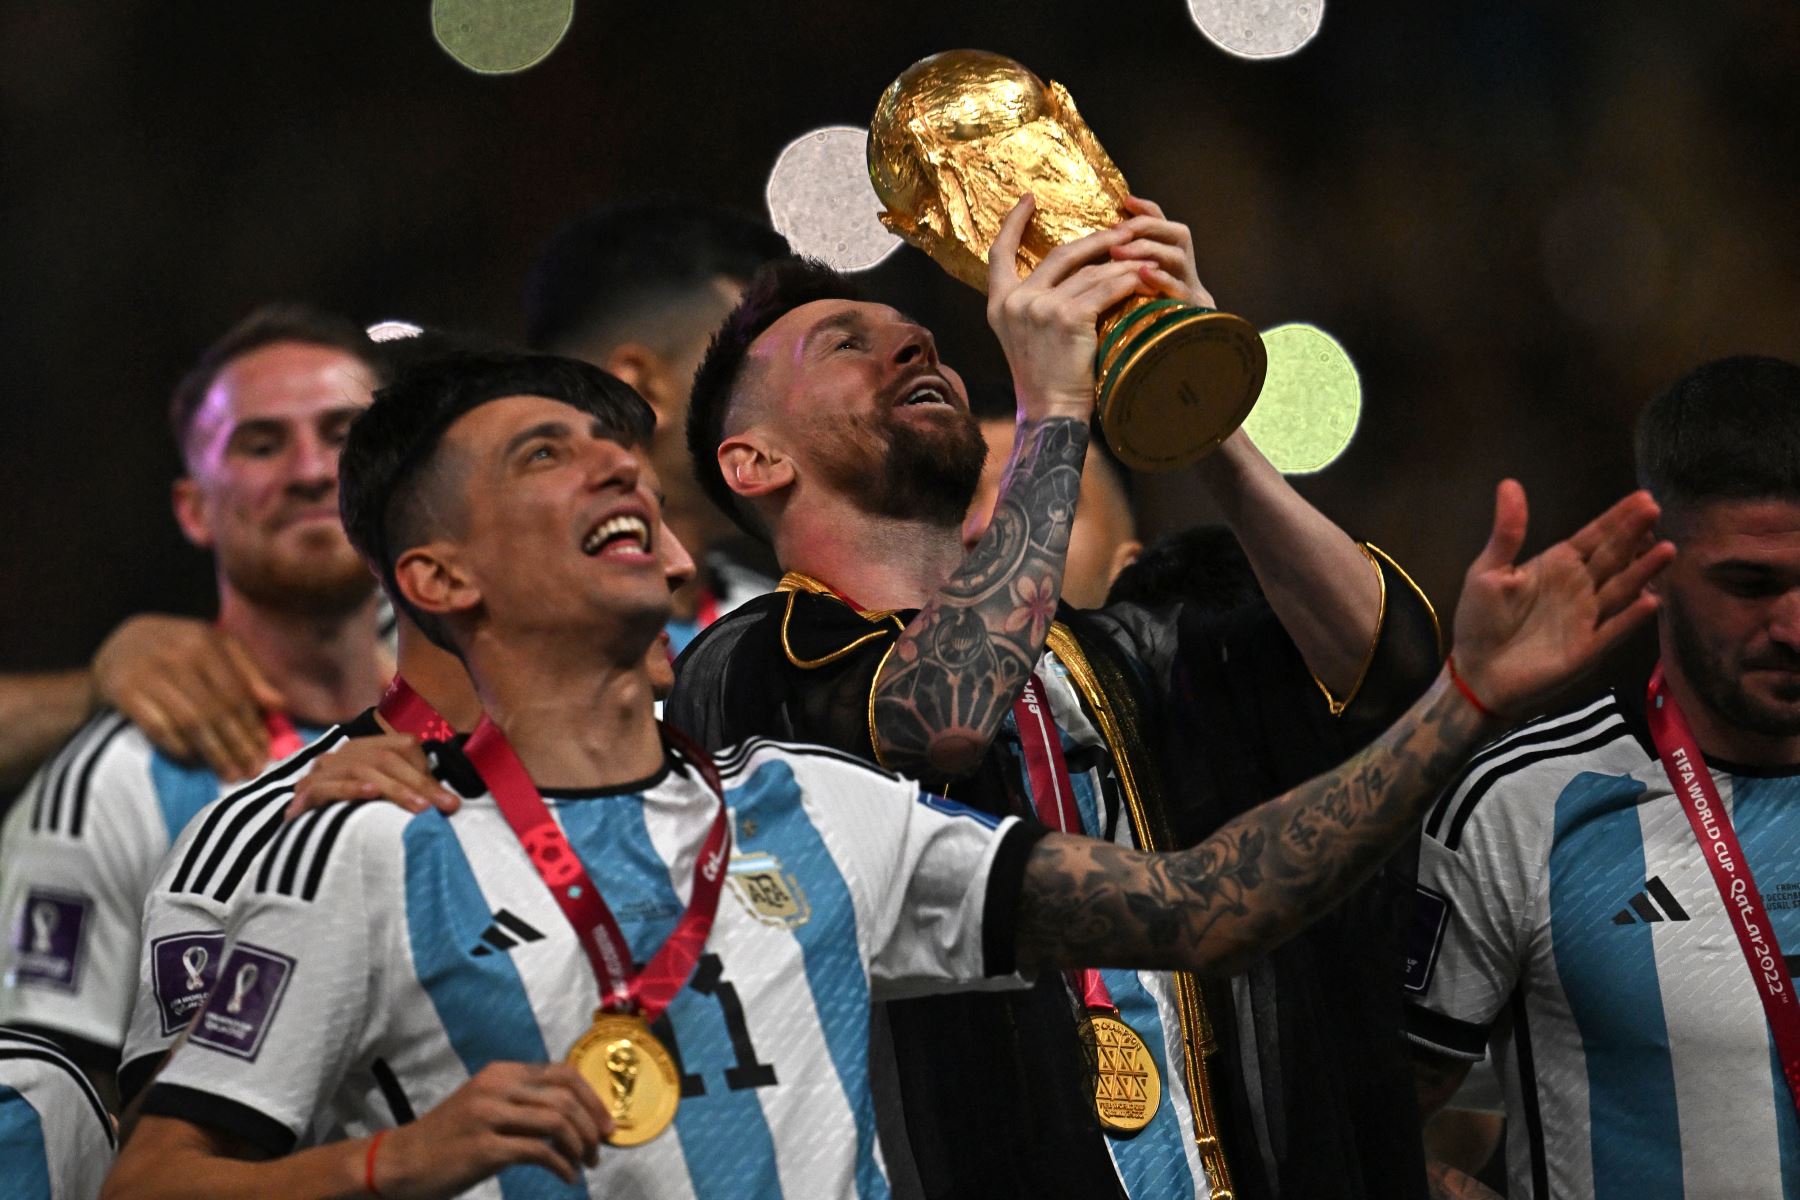 El capitán y delantero argentino Lionel Messi levanta el Trofeo de la Copa Mundial de la FIFA durante la ceremonia de entrega de trofeos después de que Argentina ganara el partido de fútbol final de la Copa Mundial Qatar 2022 entre Argentina y Francia en el Estadio Lusail en Lusail, al norte de Doha, el 18 de diciembre de 2022.
Foto: AFP